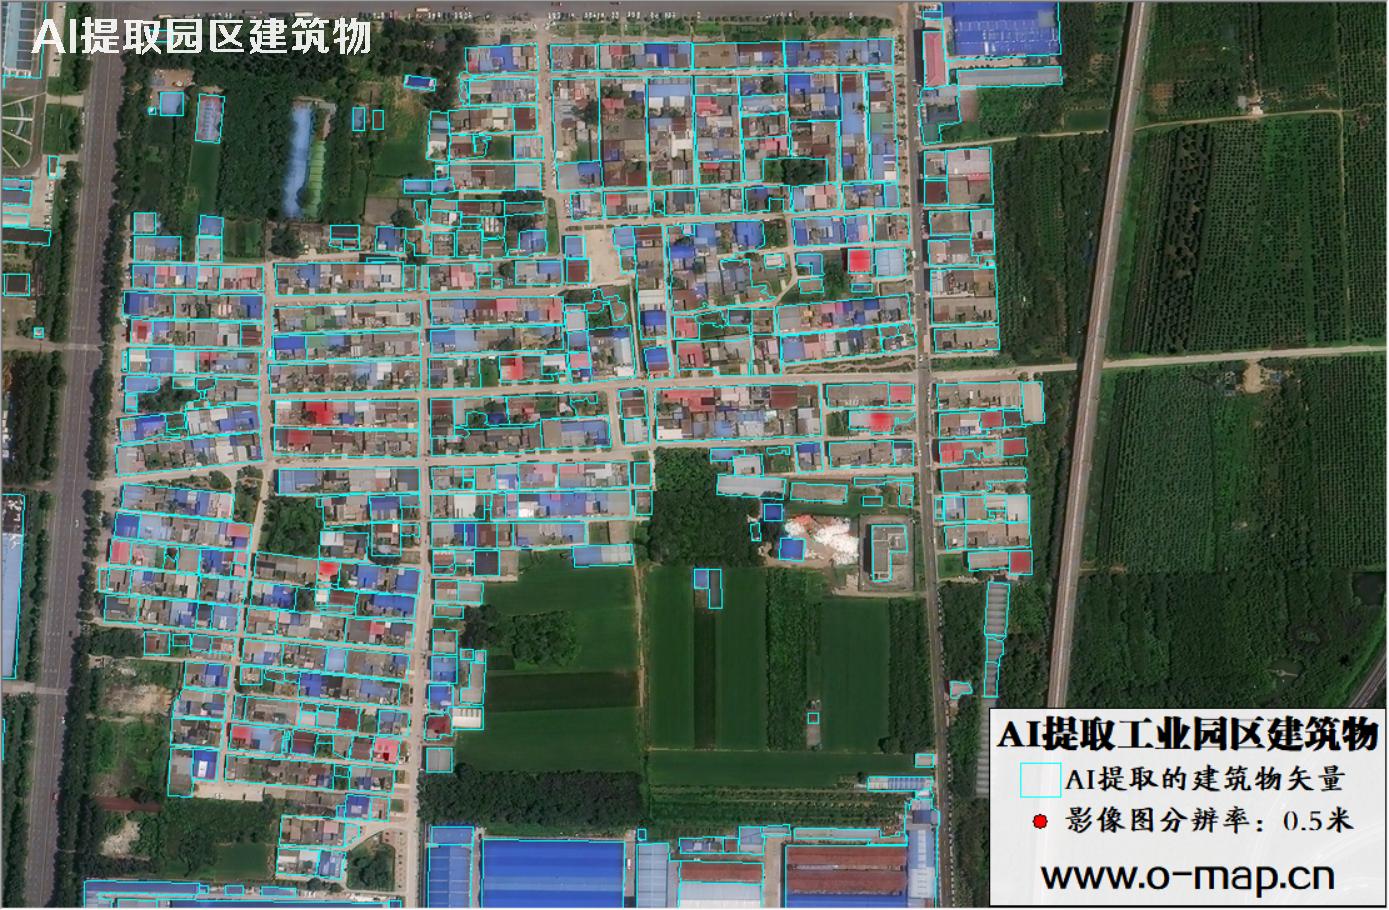 AI技术用于园区卫星影像中提取大型厂房建筑物矢量